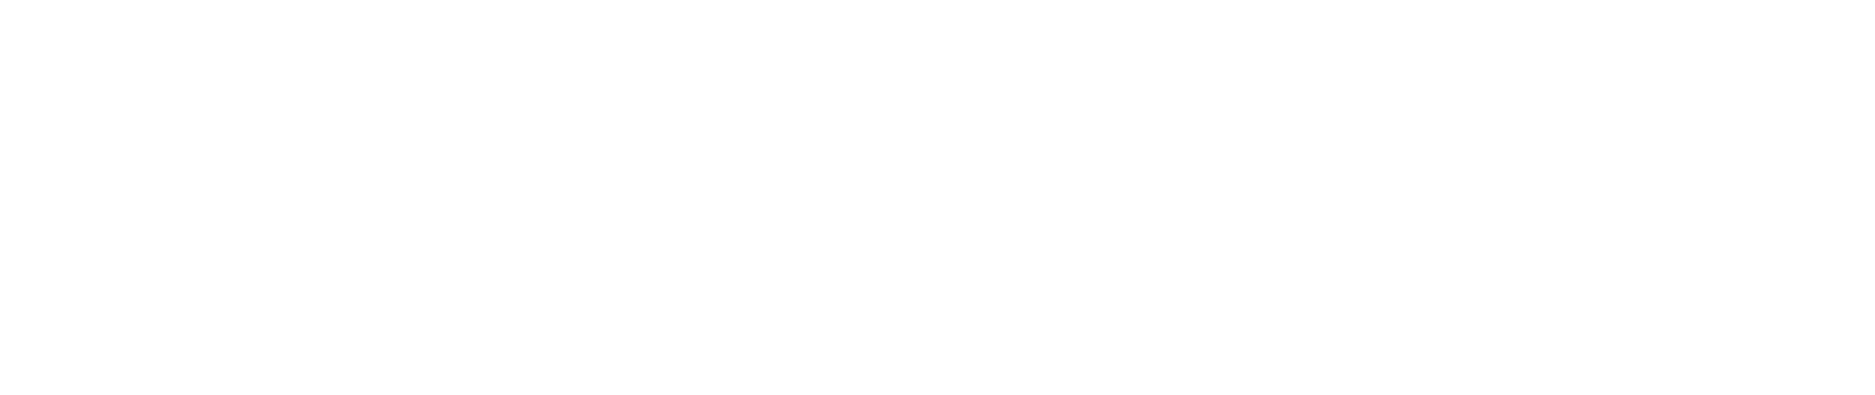 Windscape AI logo